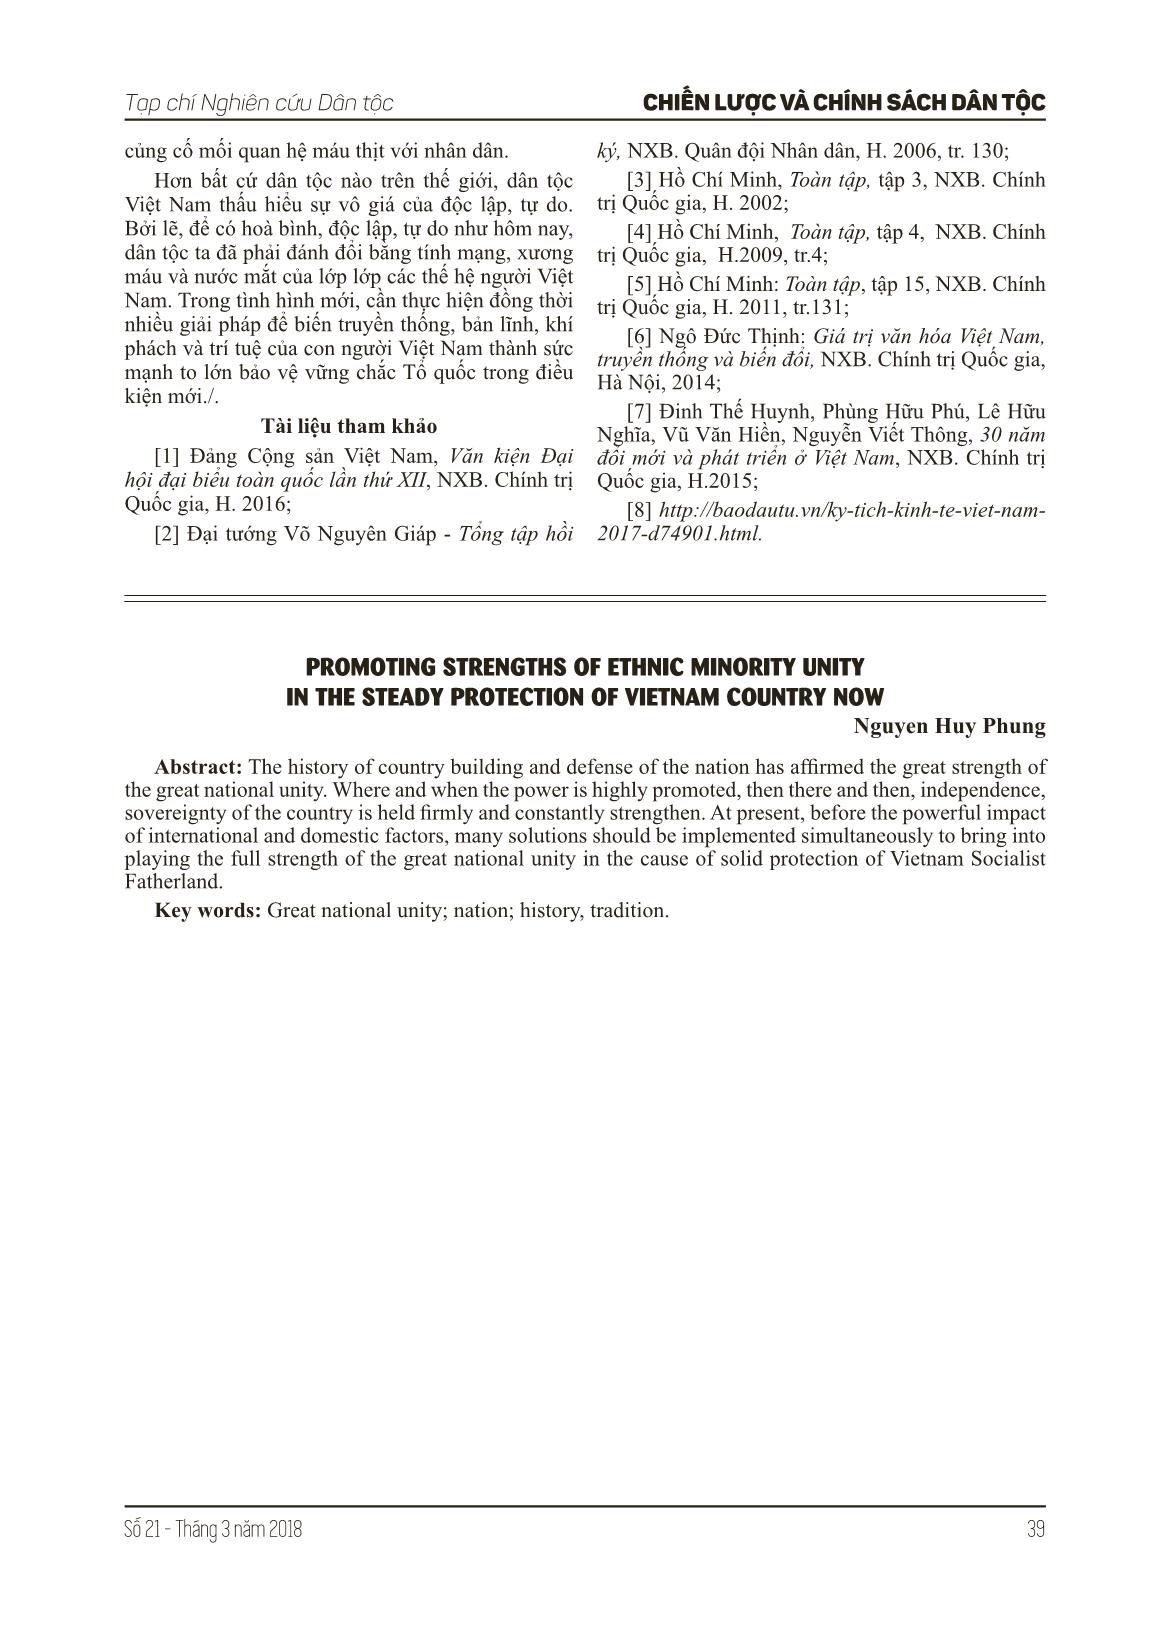 Phát huy sức mạnh khối đại đoàn kết toàn dân tộc trong bảo vệ vững chắc tổ quốc Việt Nam hiện nay trang 5